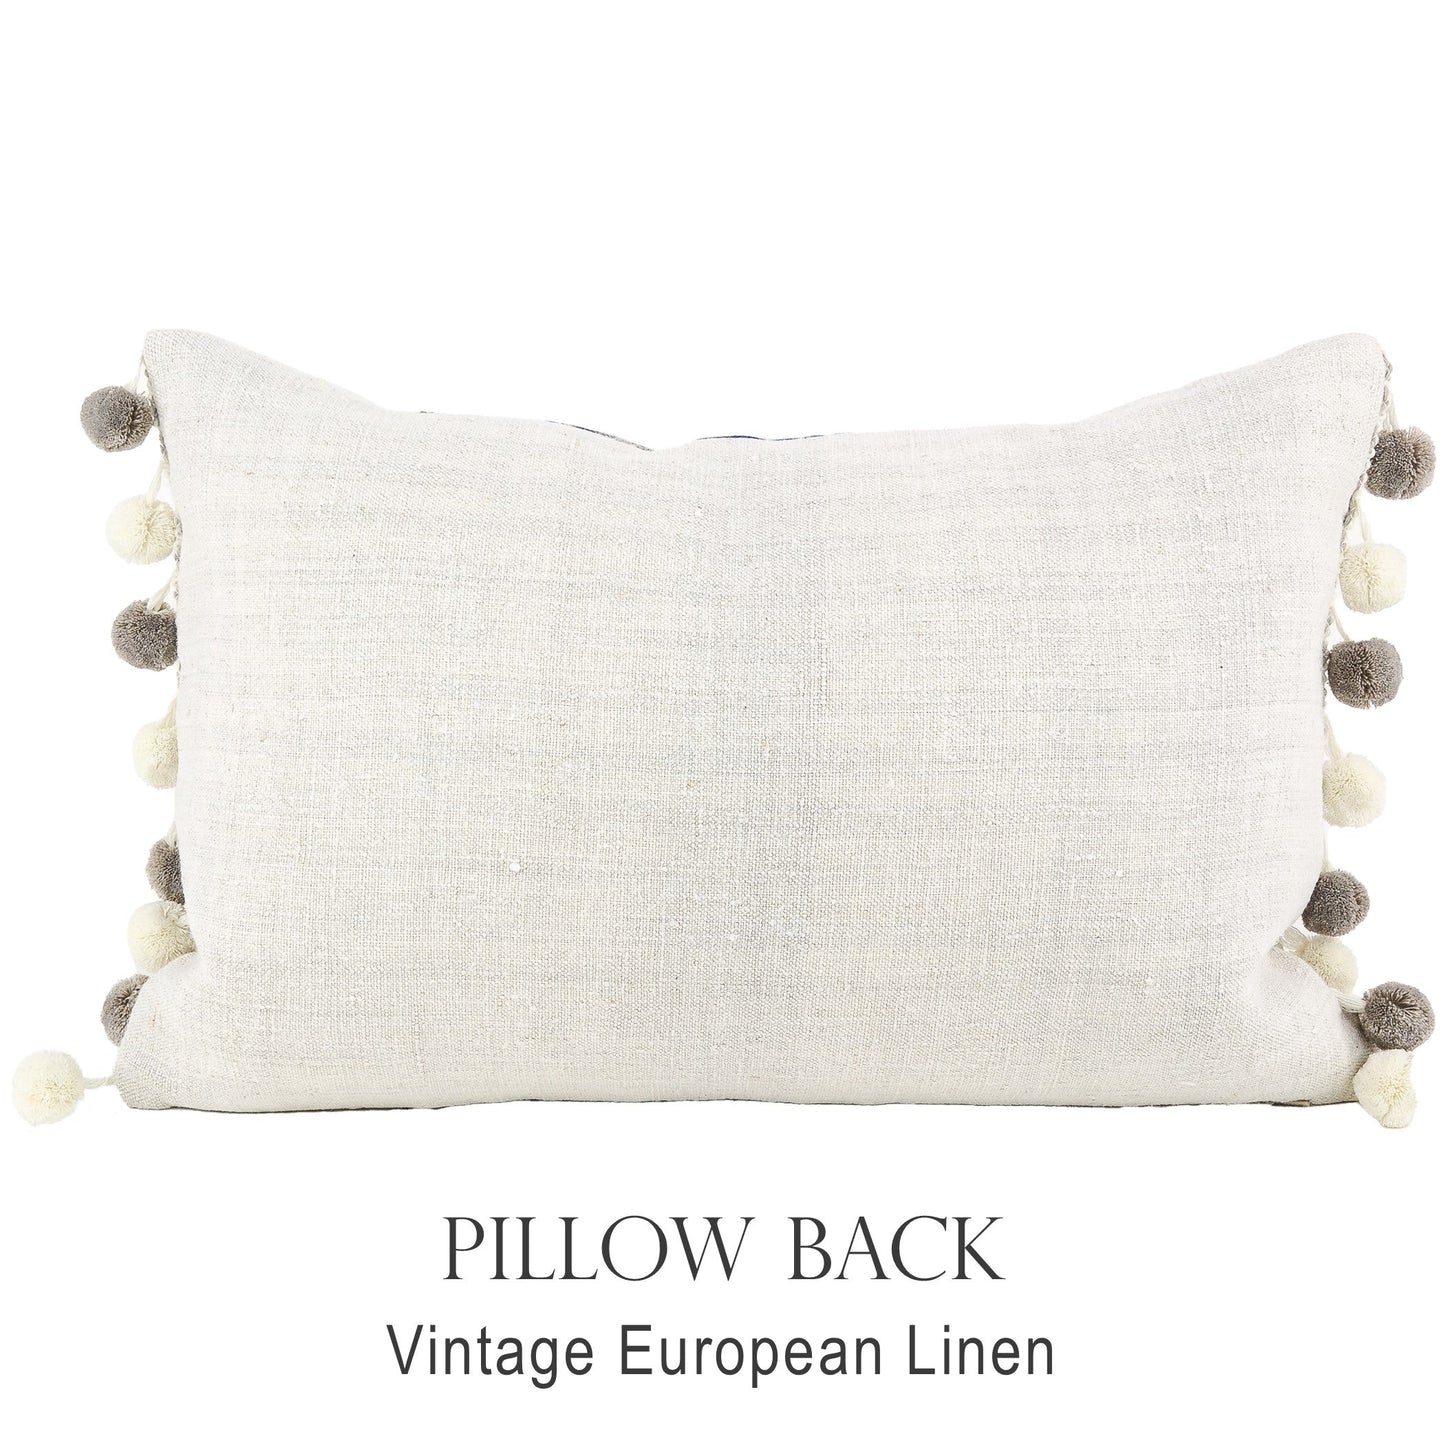 Back of pillow made from vintage European eggshell grain sack linen